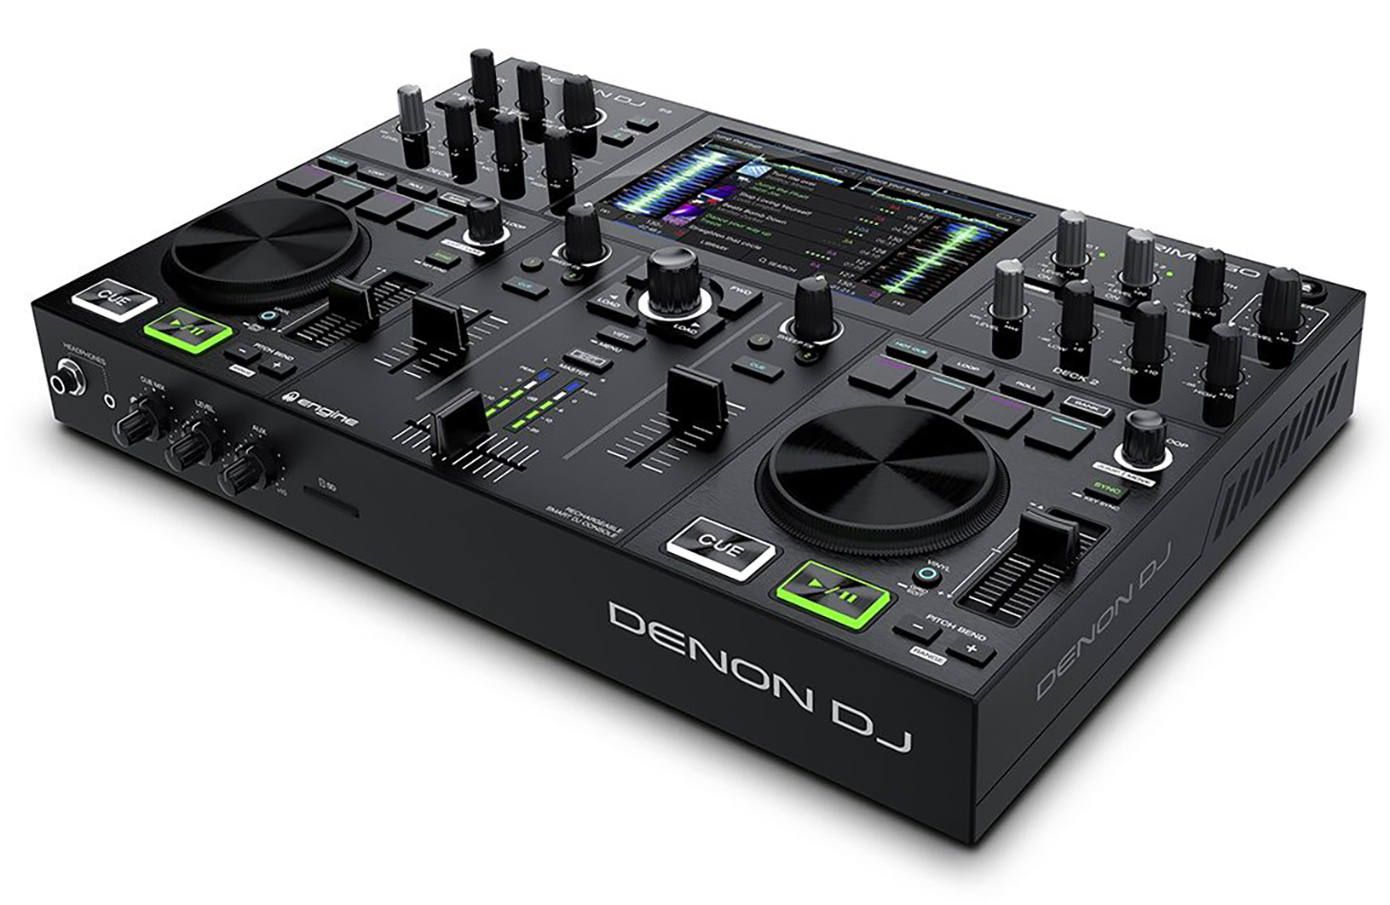 Denon DJ Prime GO DJ kontroller